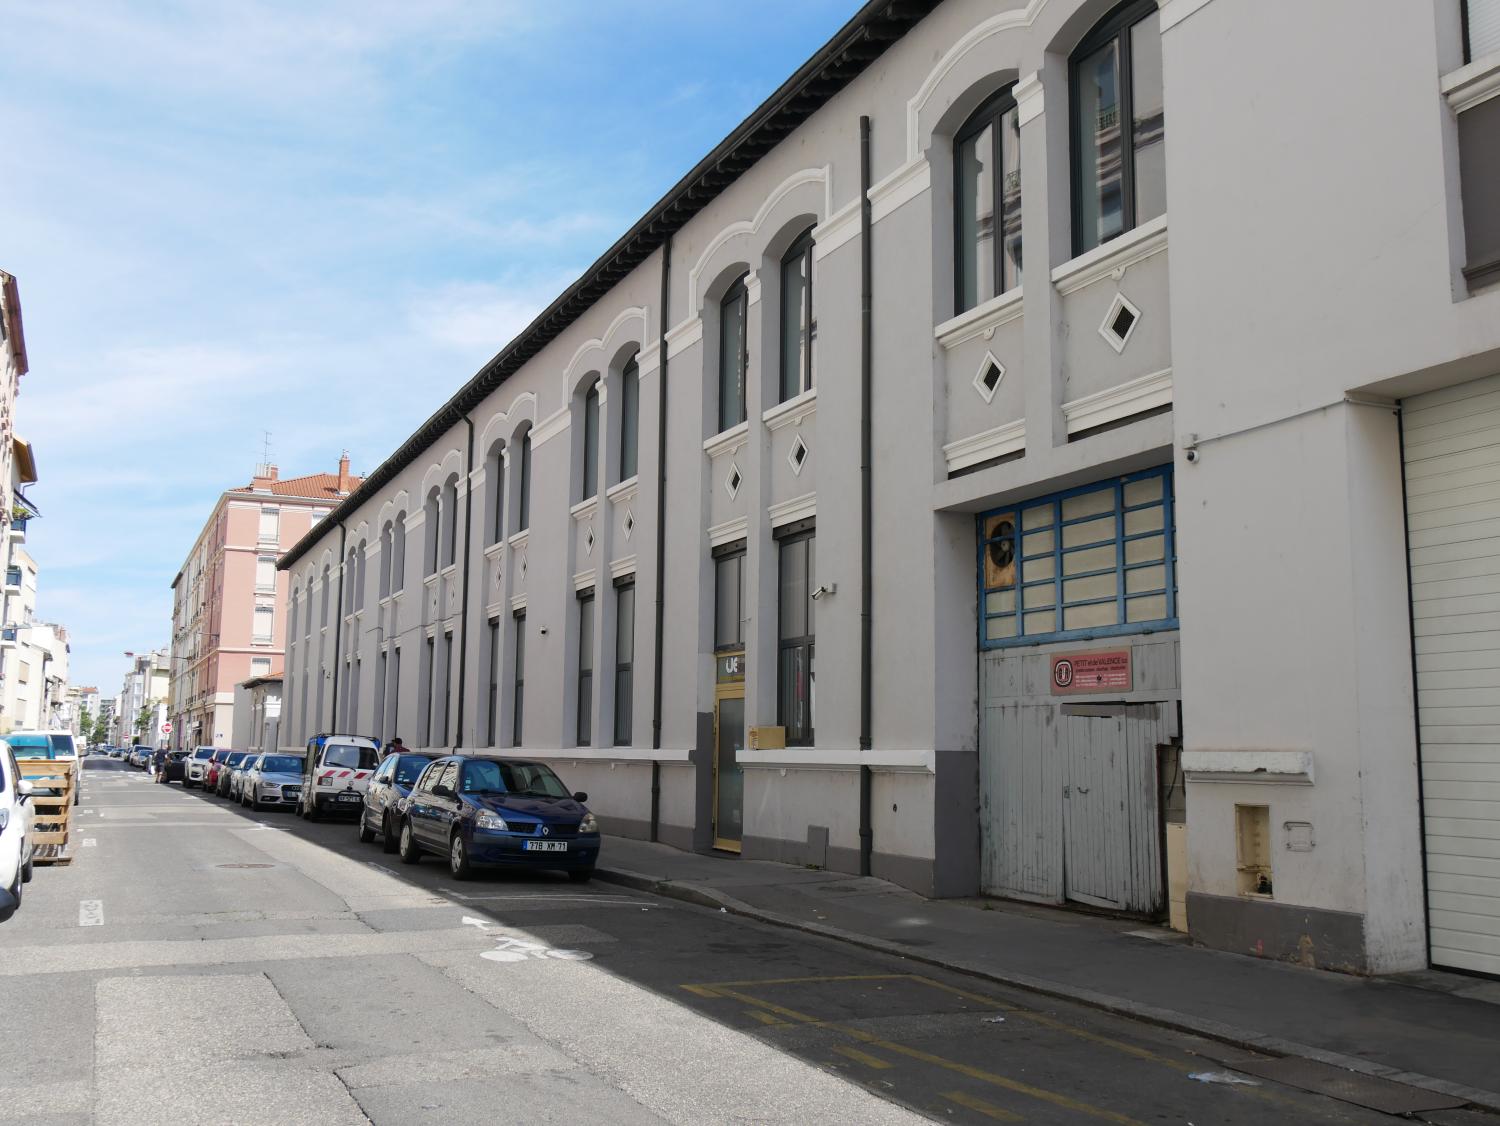 Ancienne usine de teinture « Corron et Bunand » puis T. A. L. (teinture et apprêts de Lyon) actuellement supermarchés